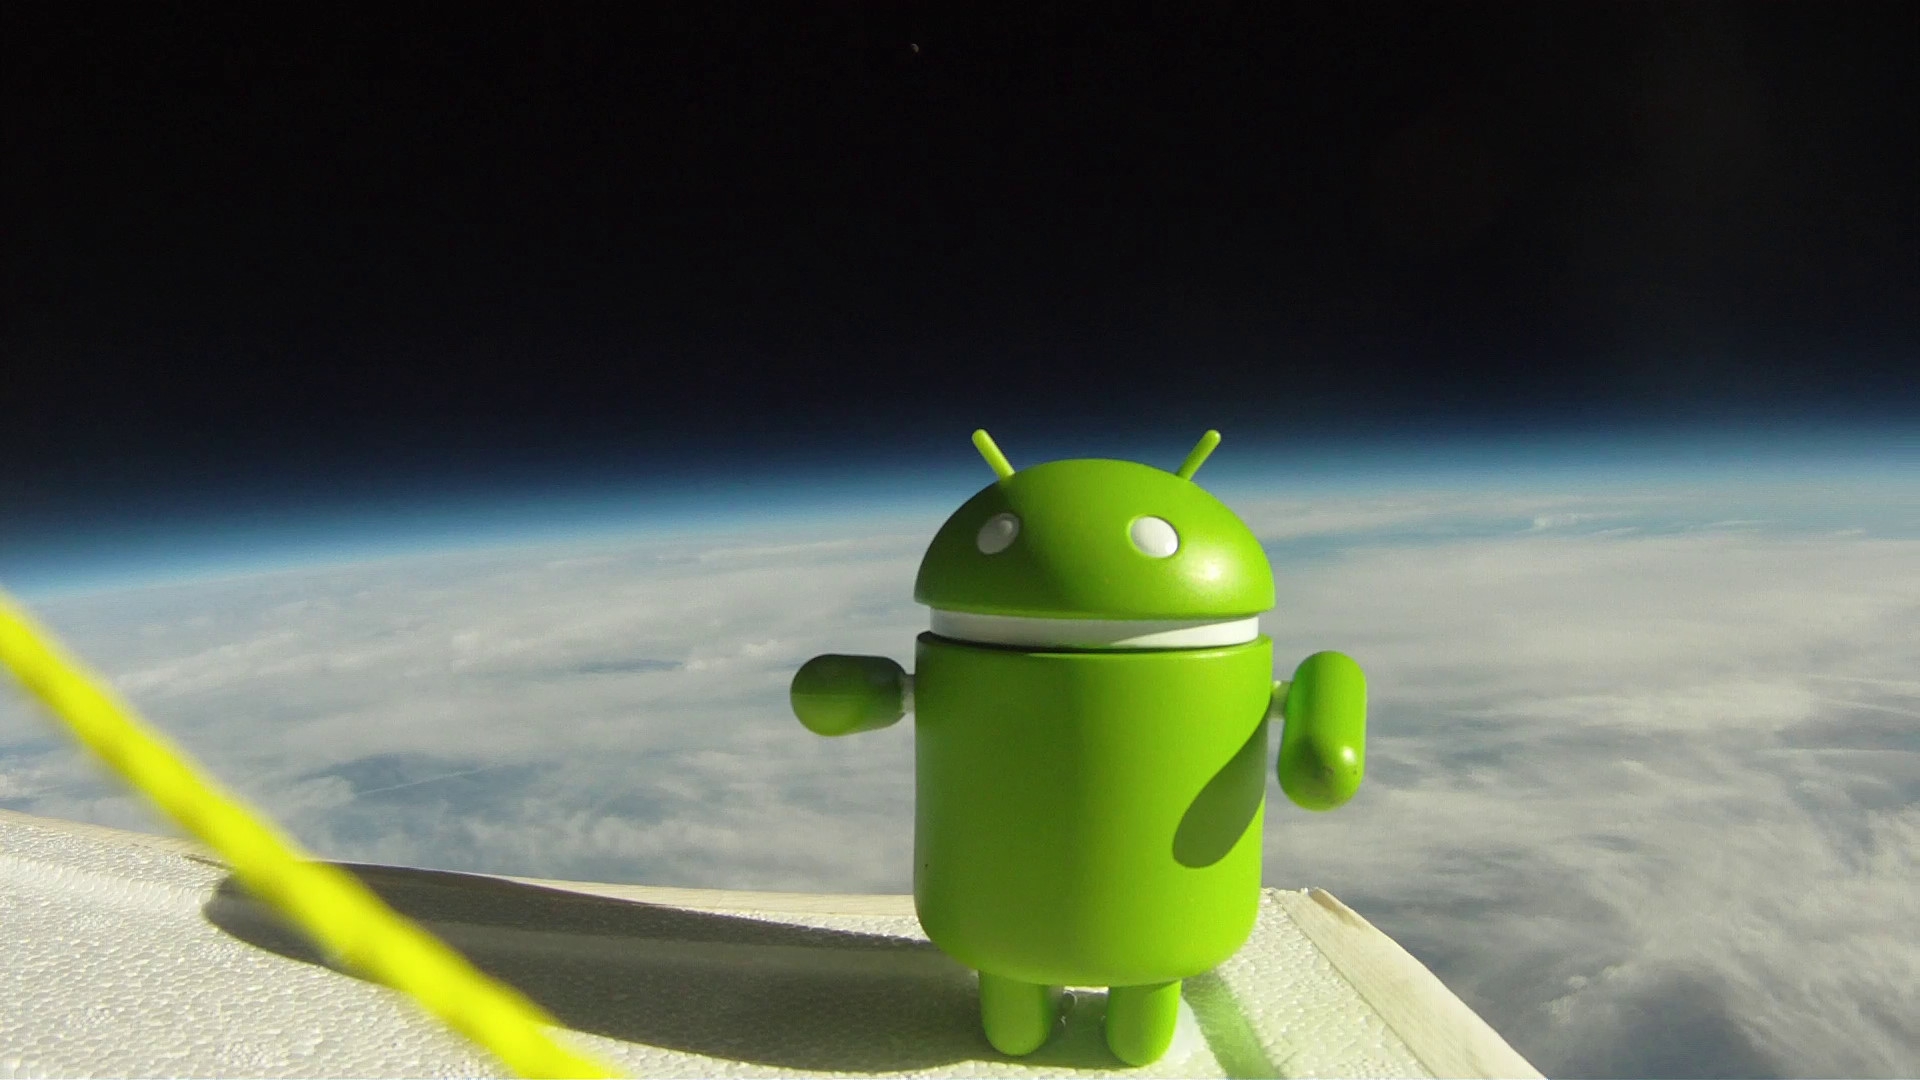 La mascotte d'Android, à 30 kilomètres au-dessus de la surface terrestre, sourit aux photographes. Il peut faire aussi bien que l'iPhone parti un jour dans la stratosphère... © Google